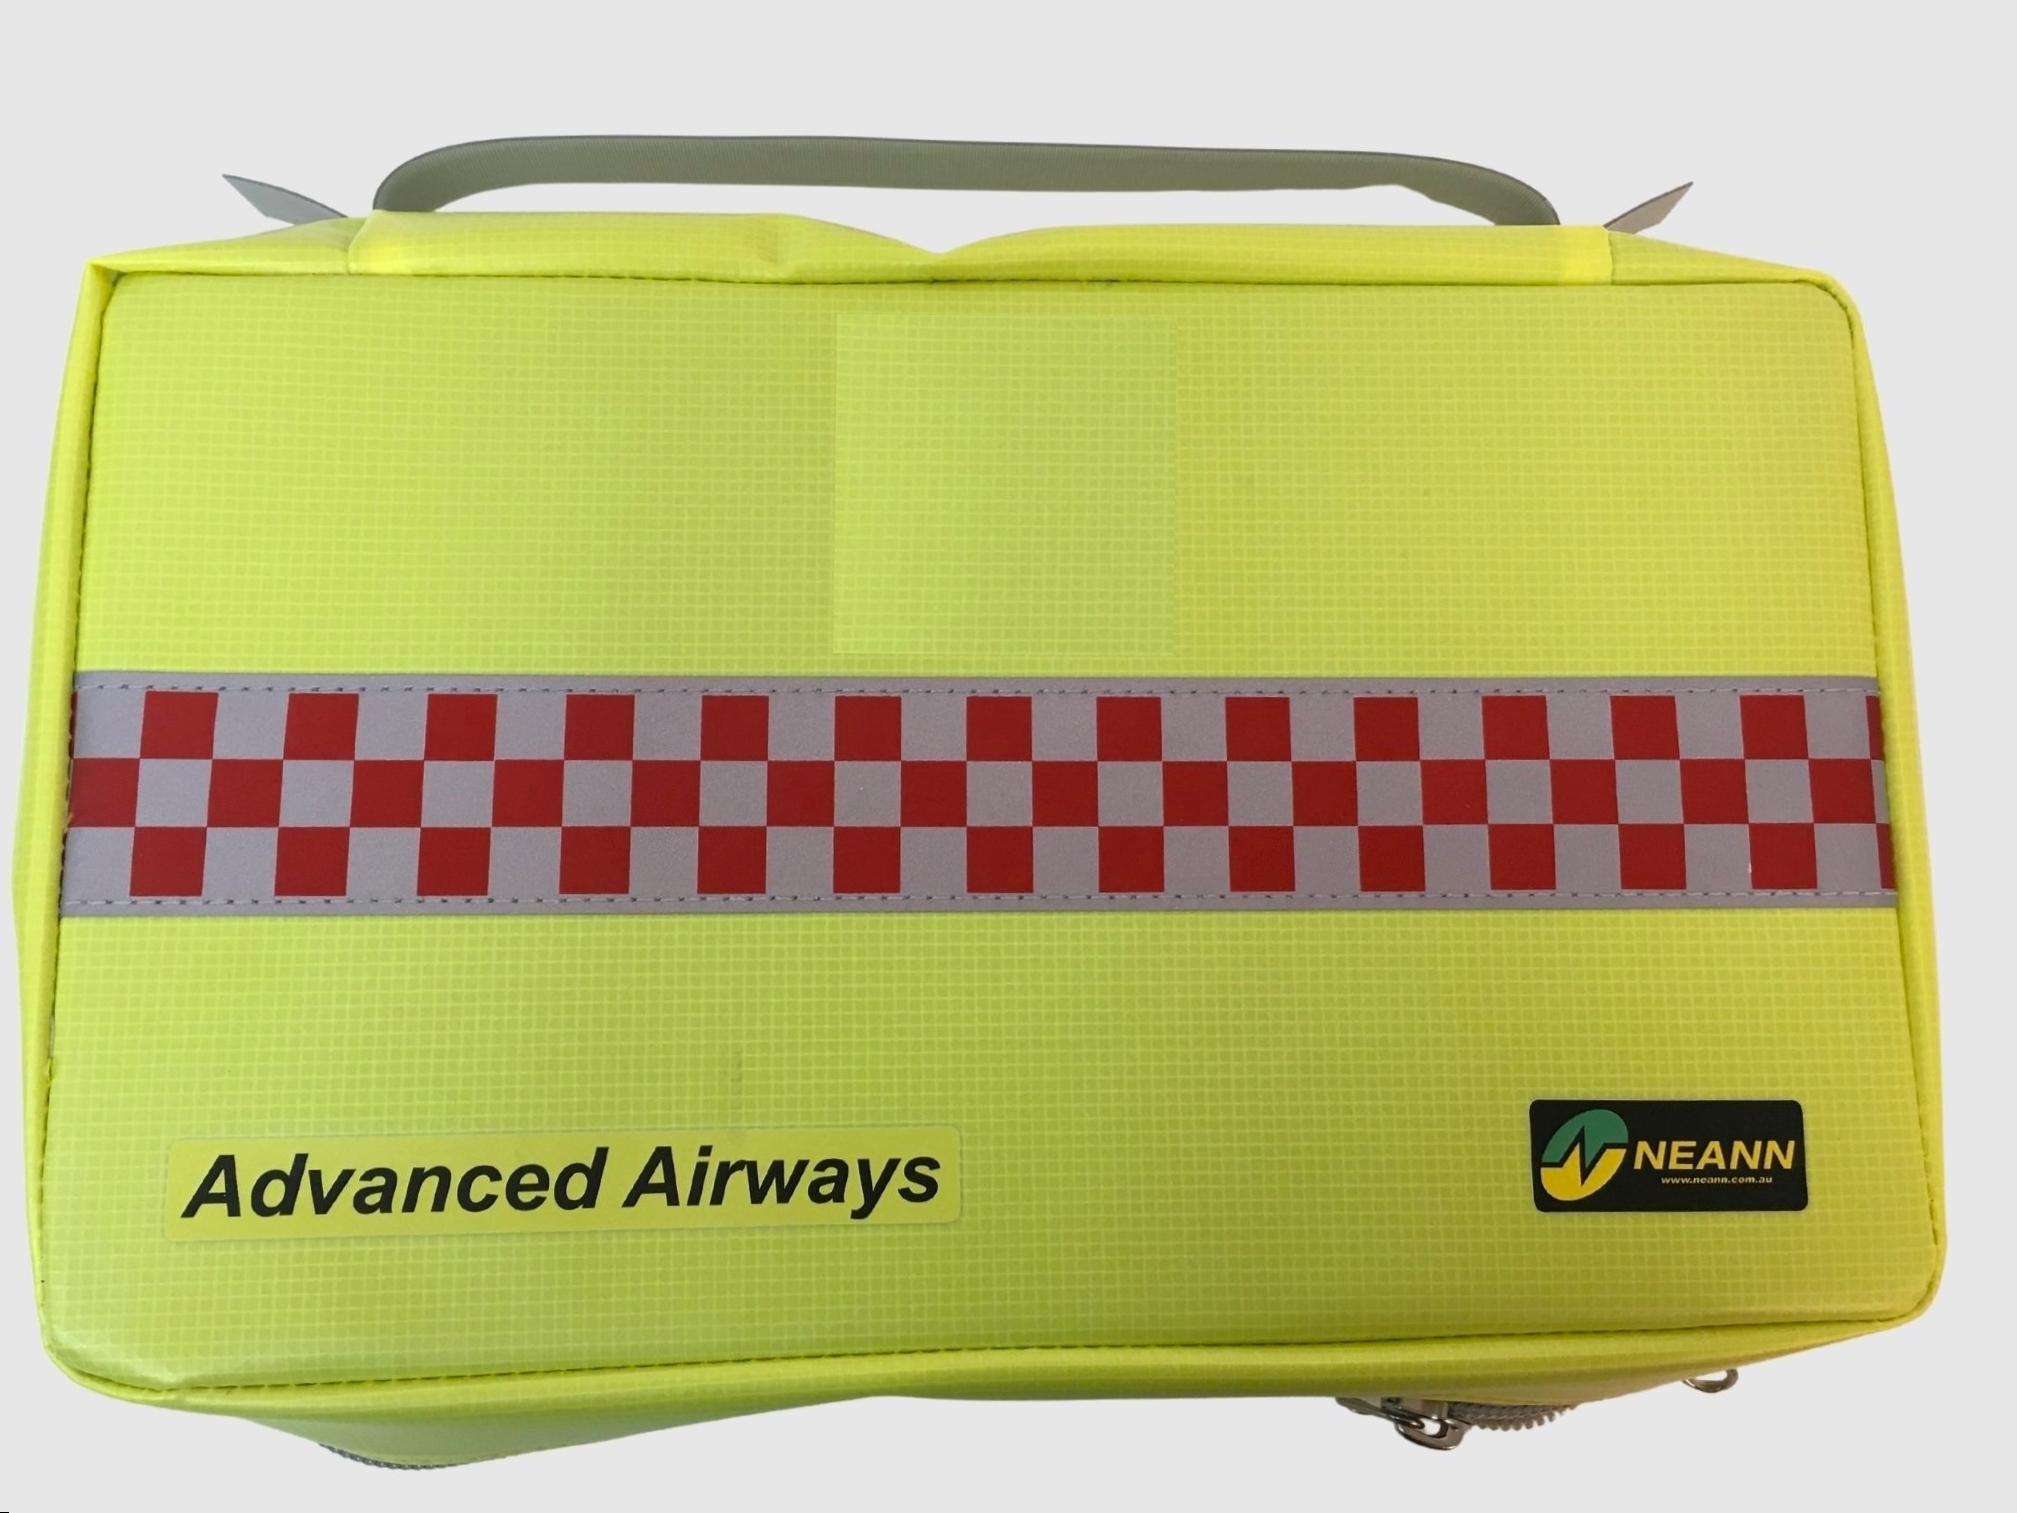 Breathsaver Plus Oxygen & Airway Bag by Iron Duck